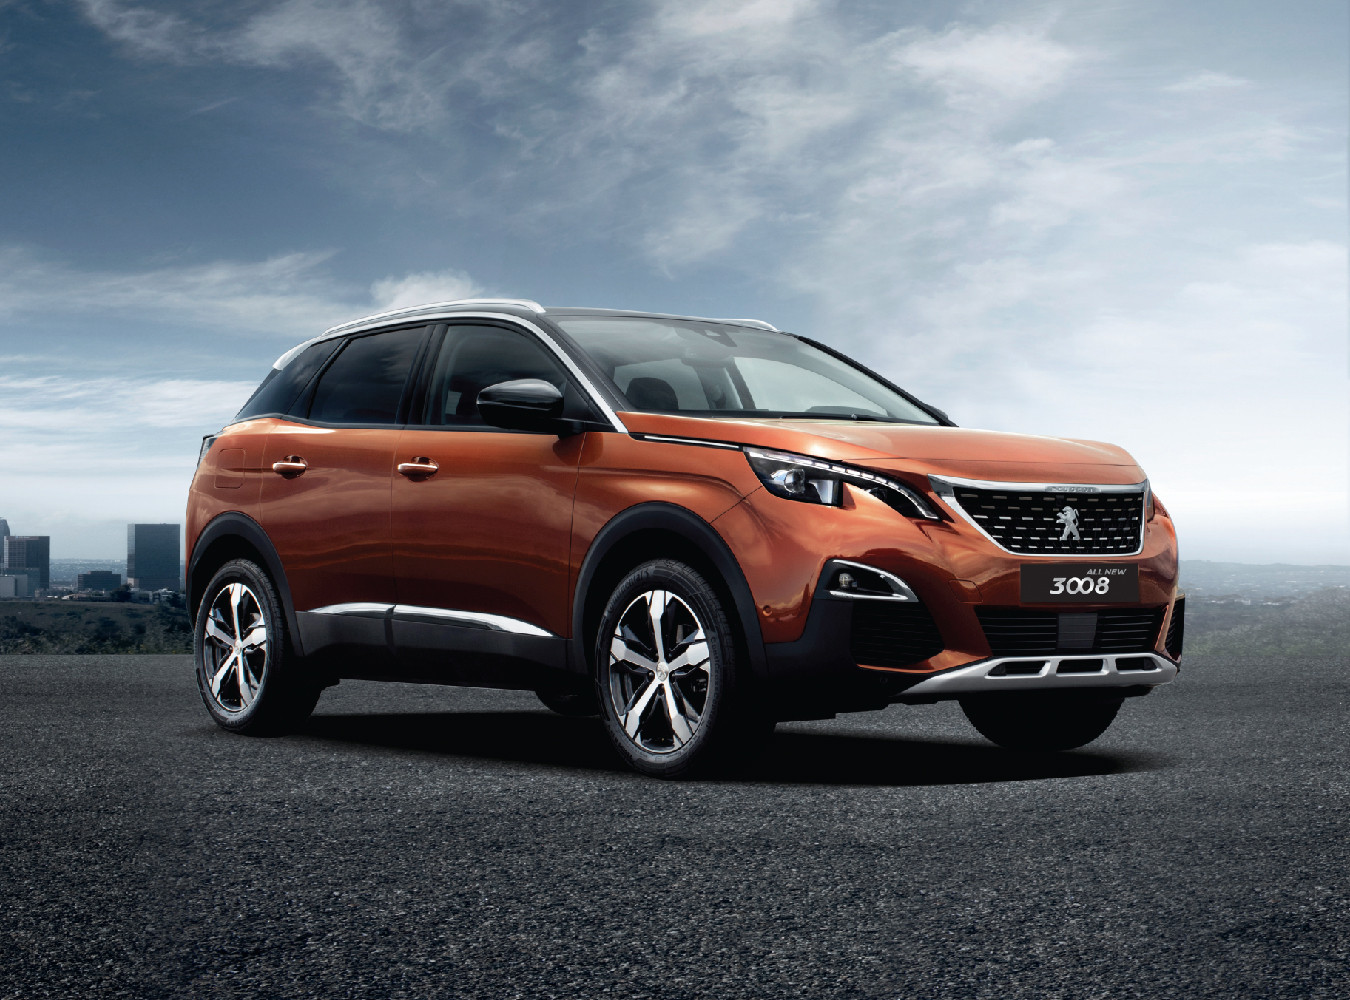 Ngập tràn ưu đãi khi mua xe Kia, Peugeot trong tháng 1/2019